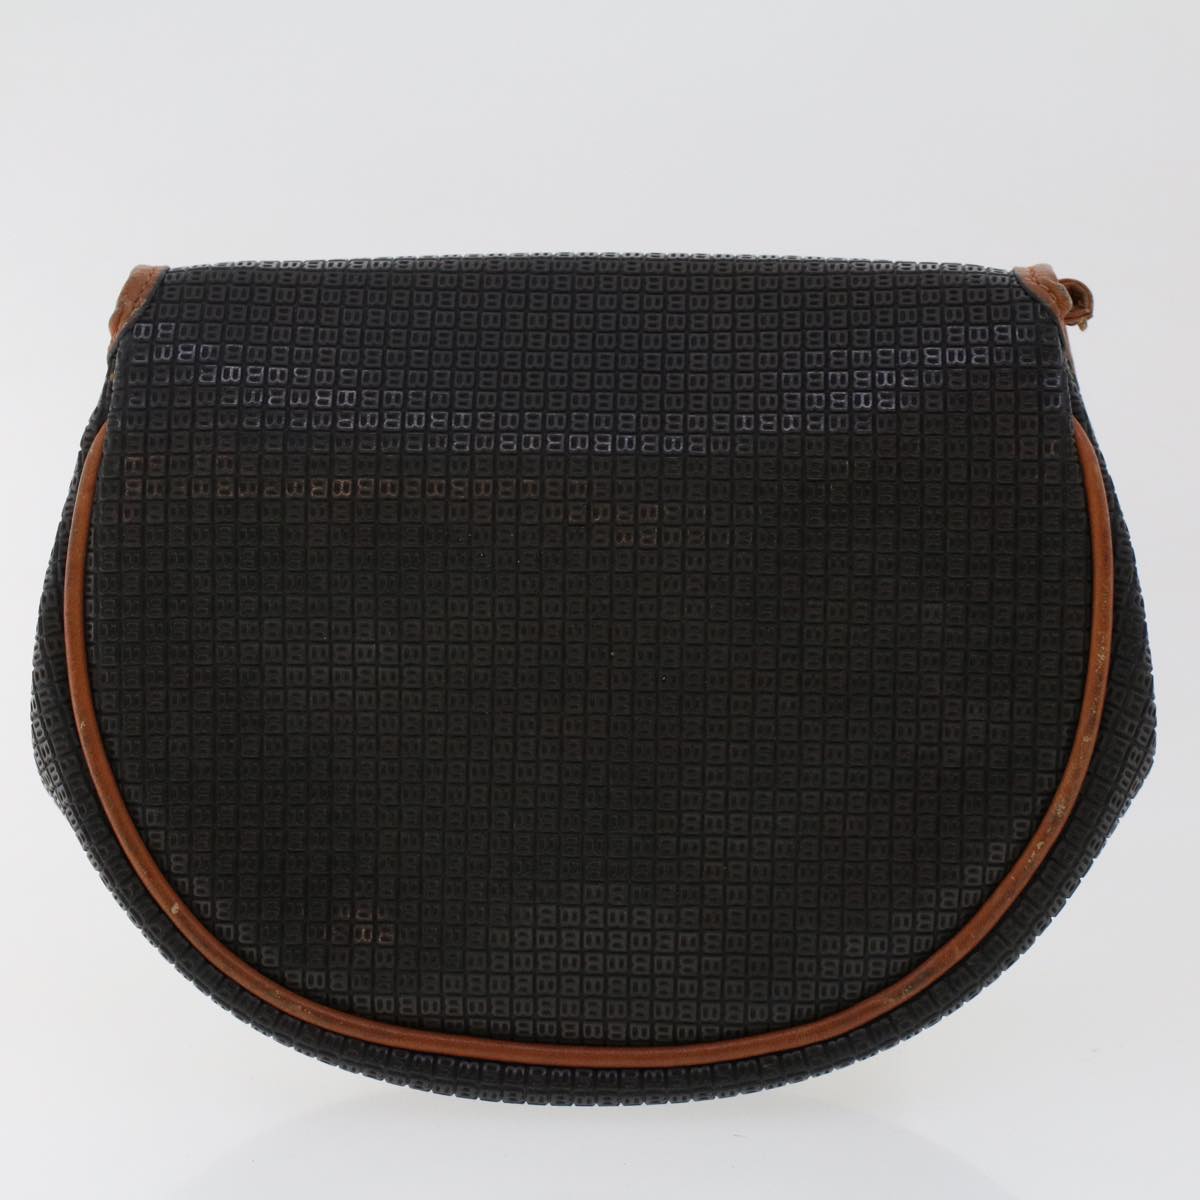 BALLY Shoulder Bag Leather 2Set Black Brown Auth bs6962